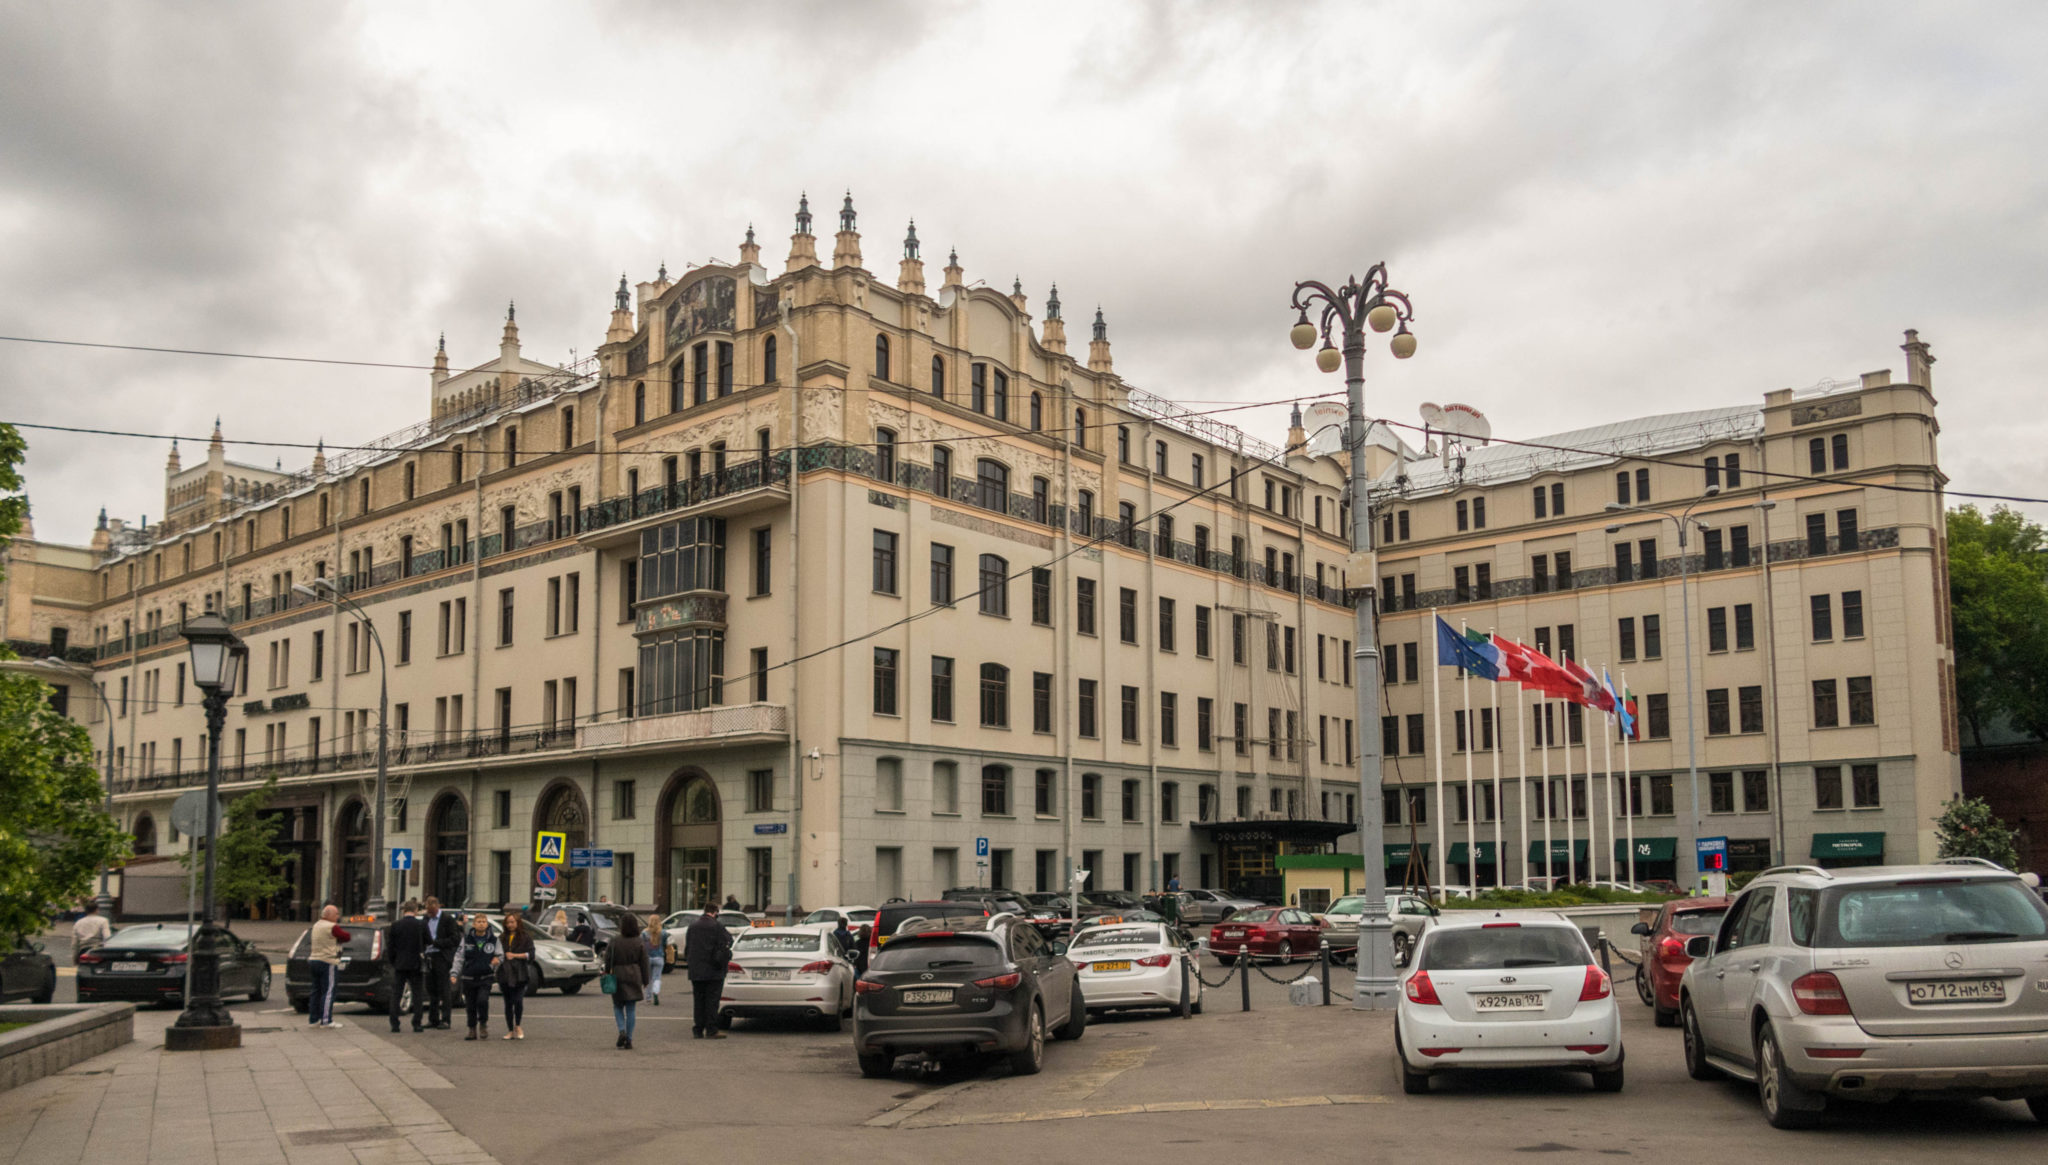 отель метрополь в москве